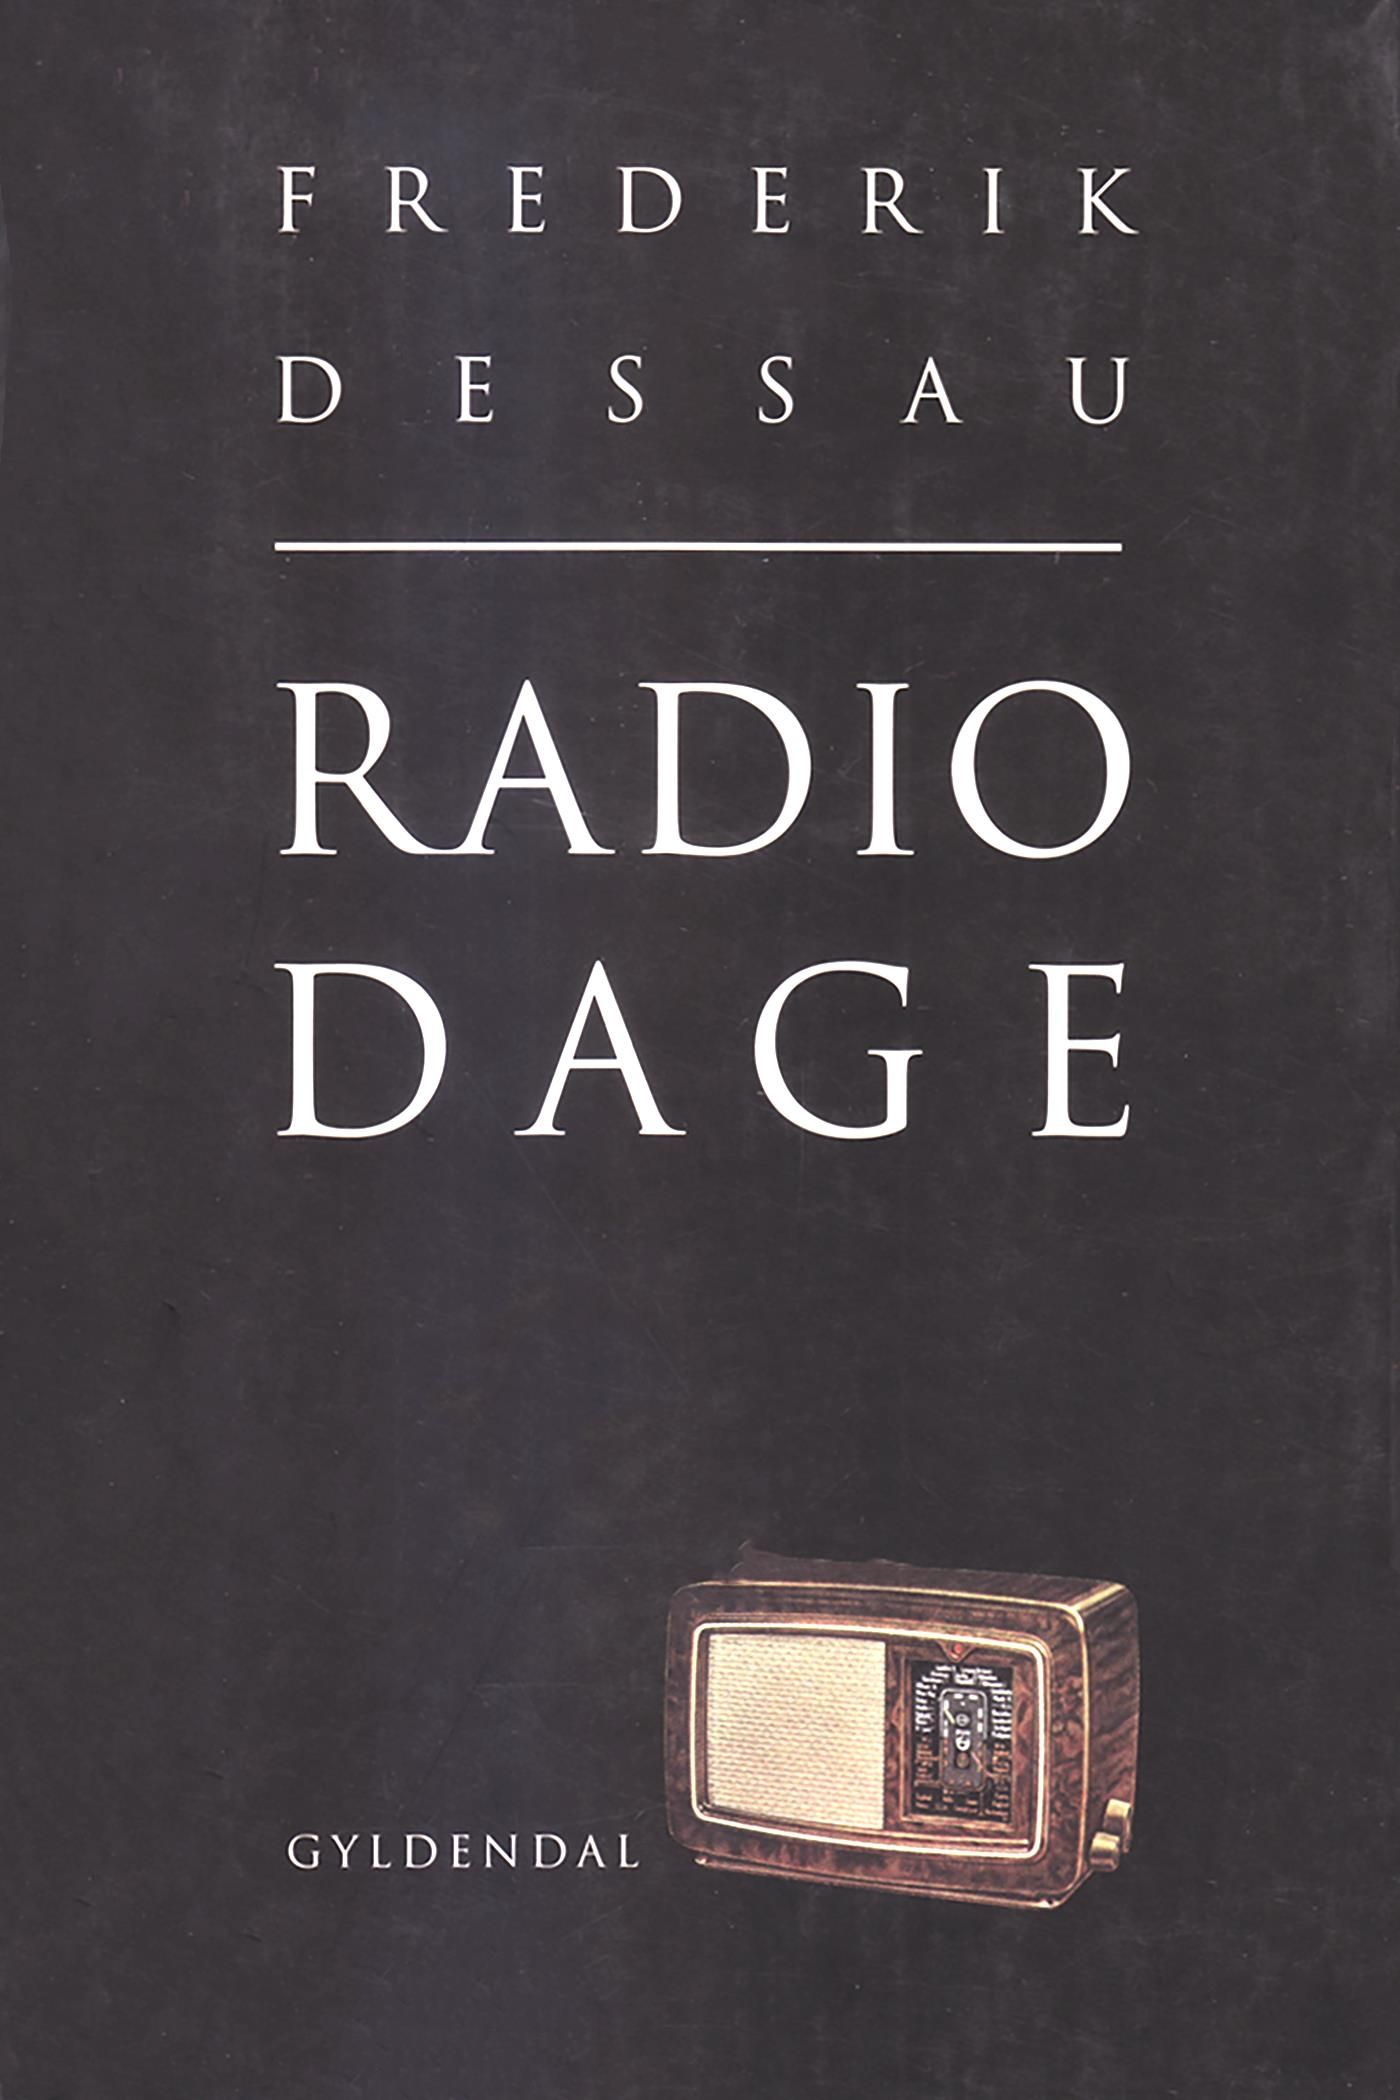 Radiodage, e-bog af Frederik Dessau